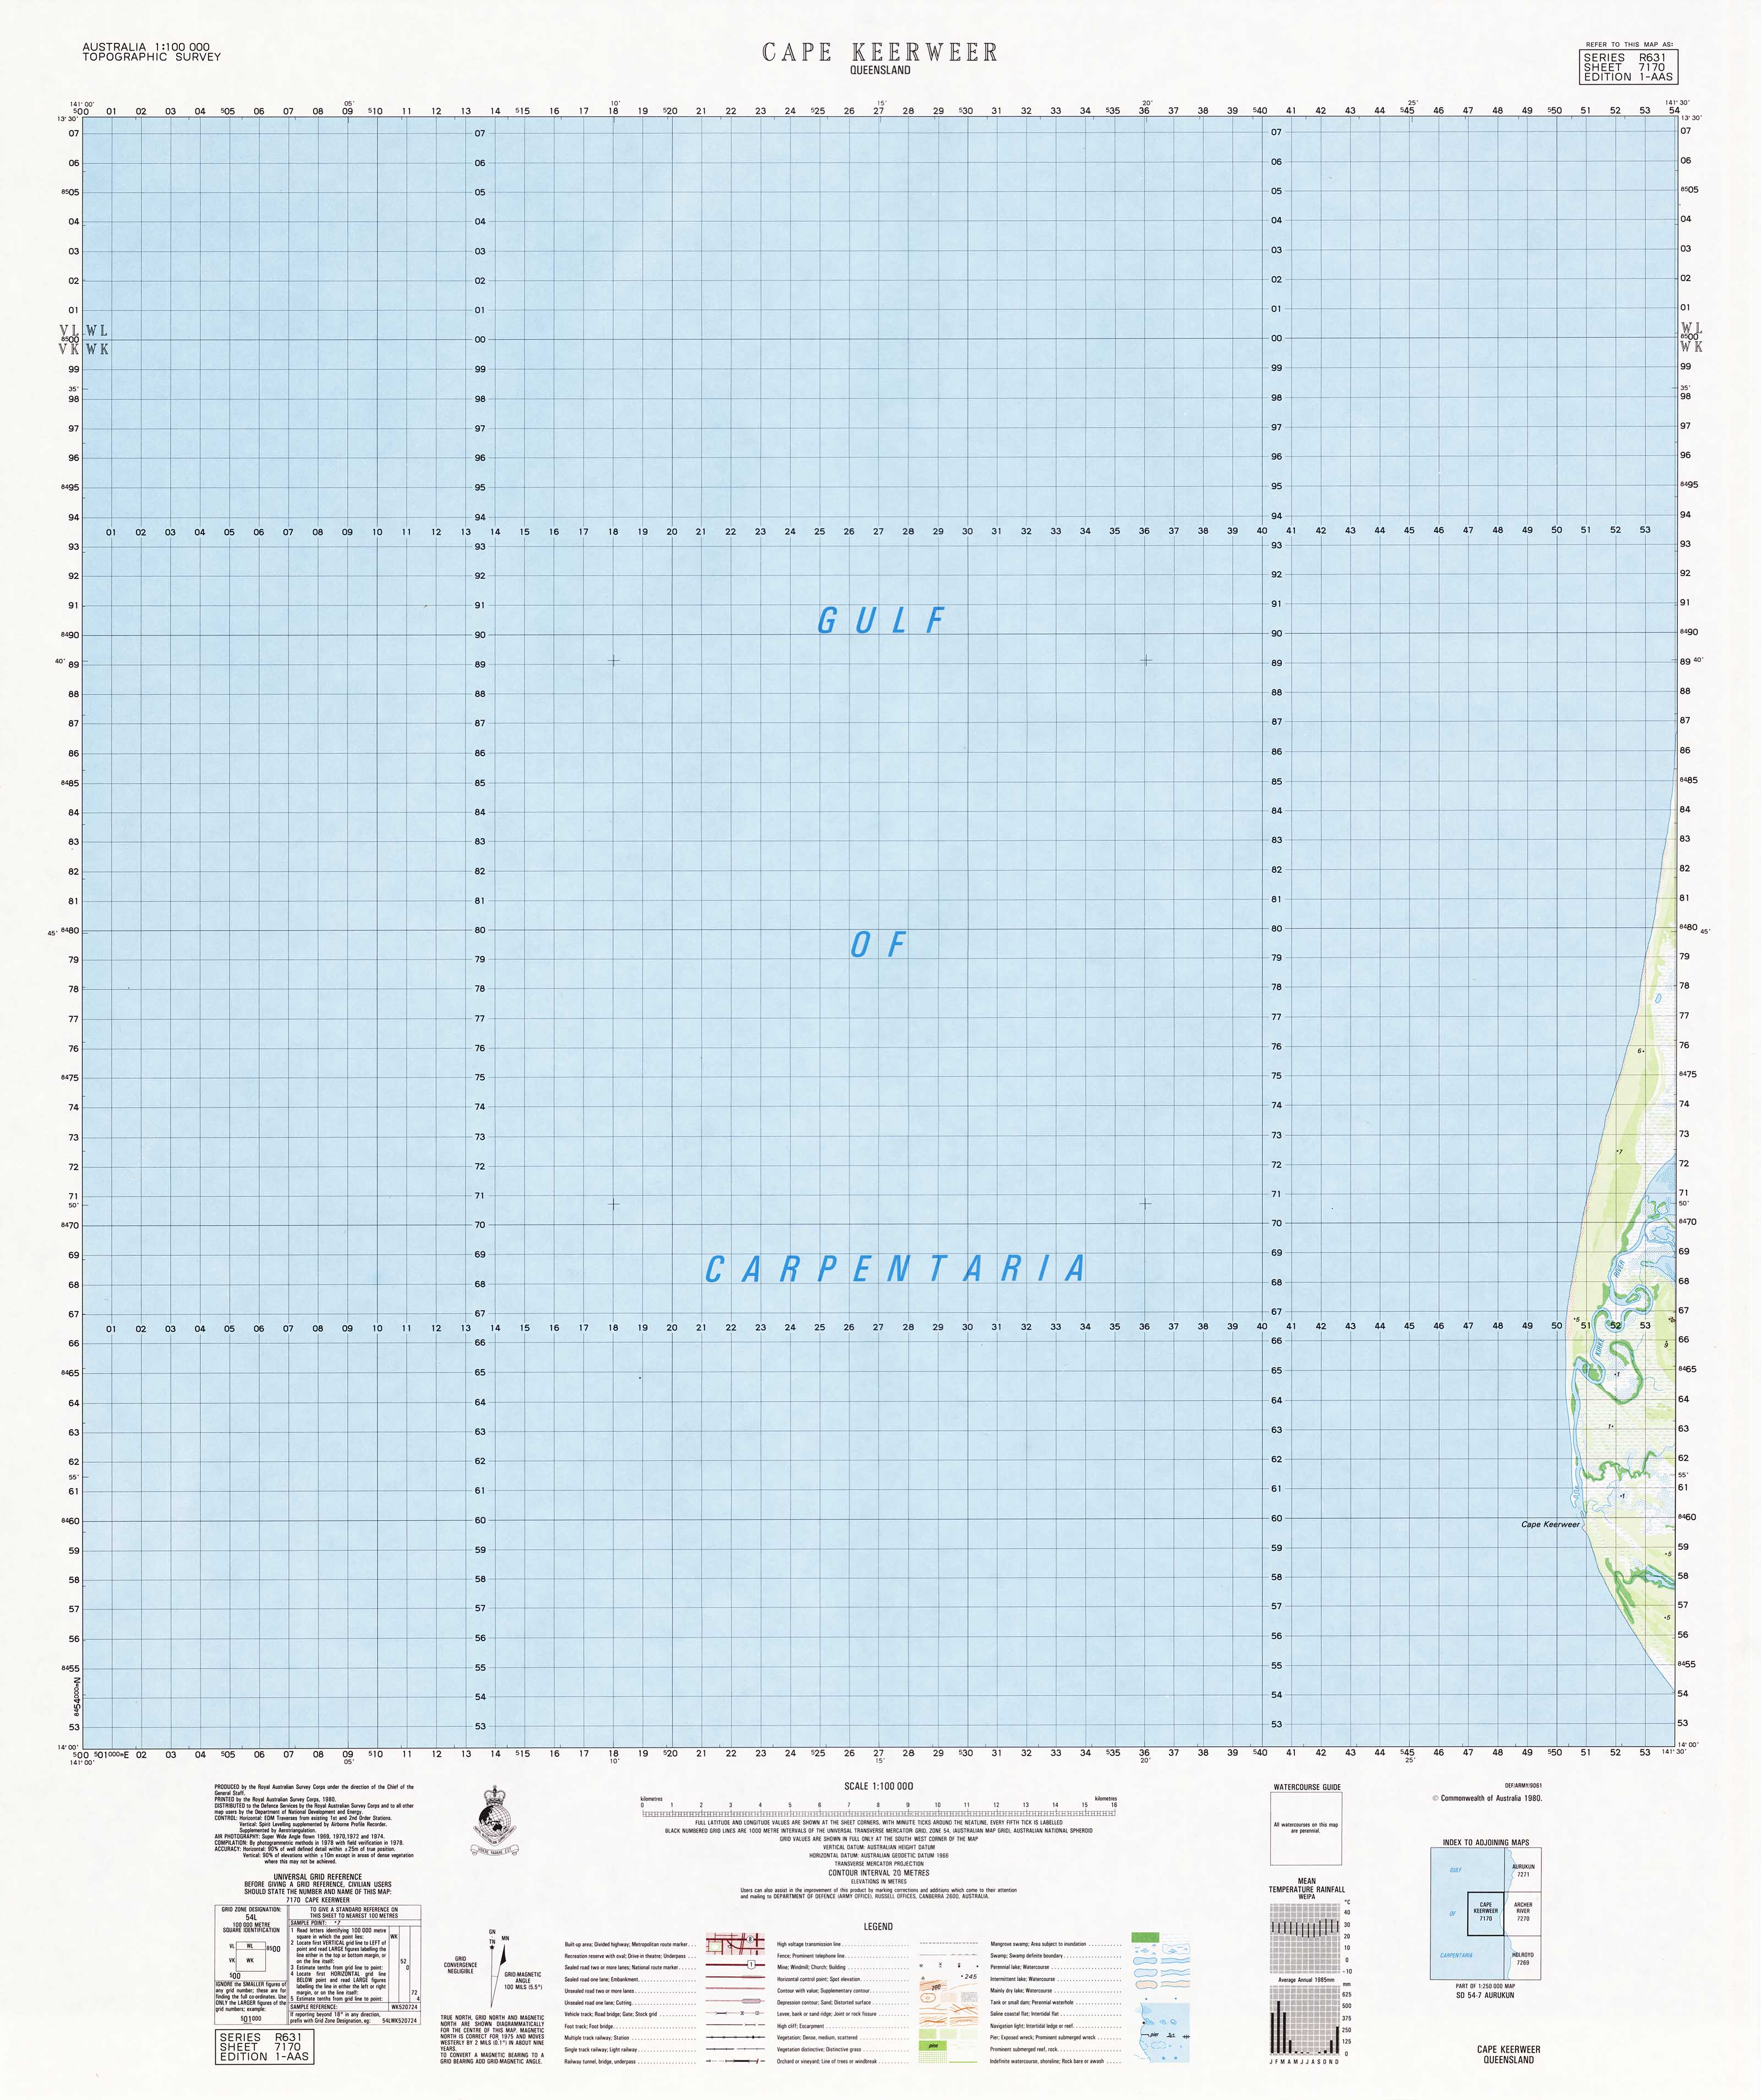 Buy 7170 Cape Keerweer 1:100k Topographic Map